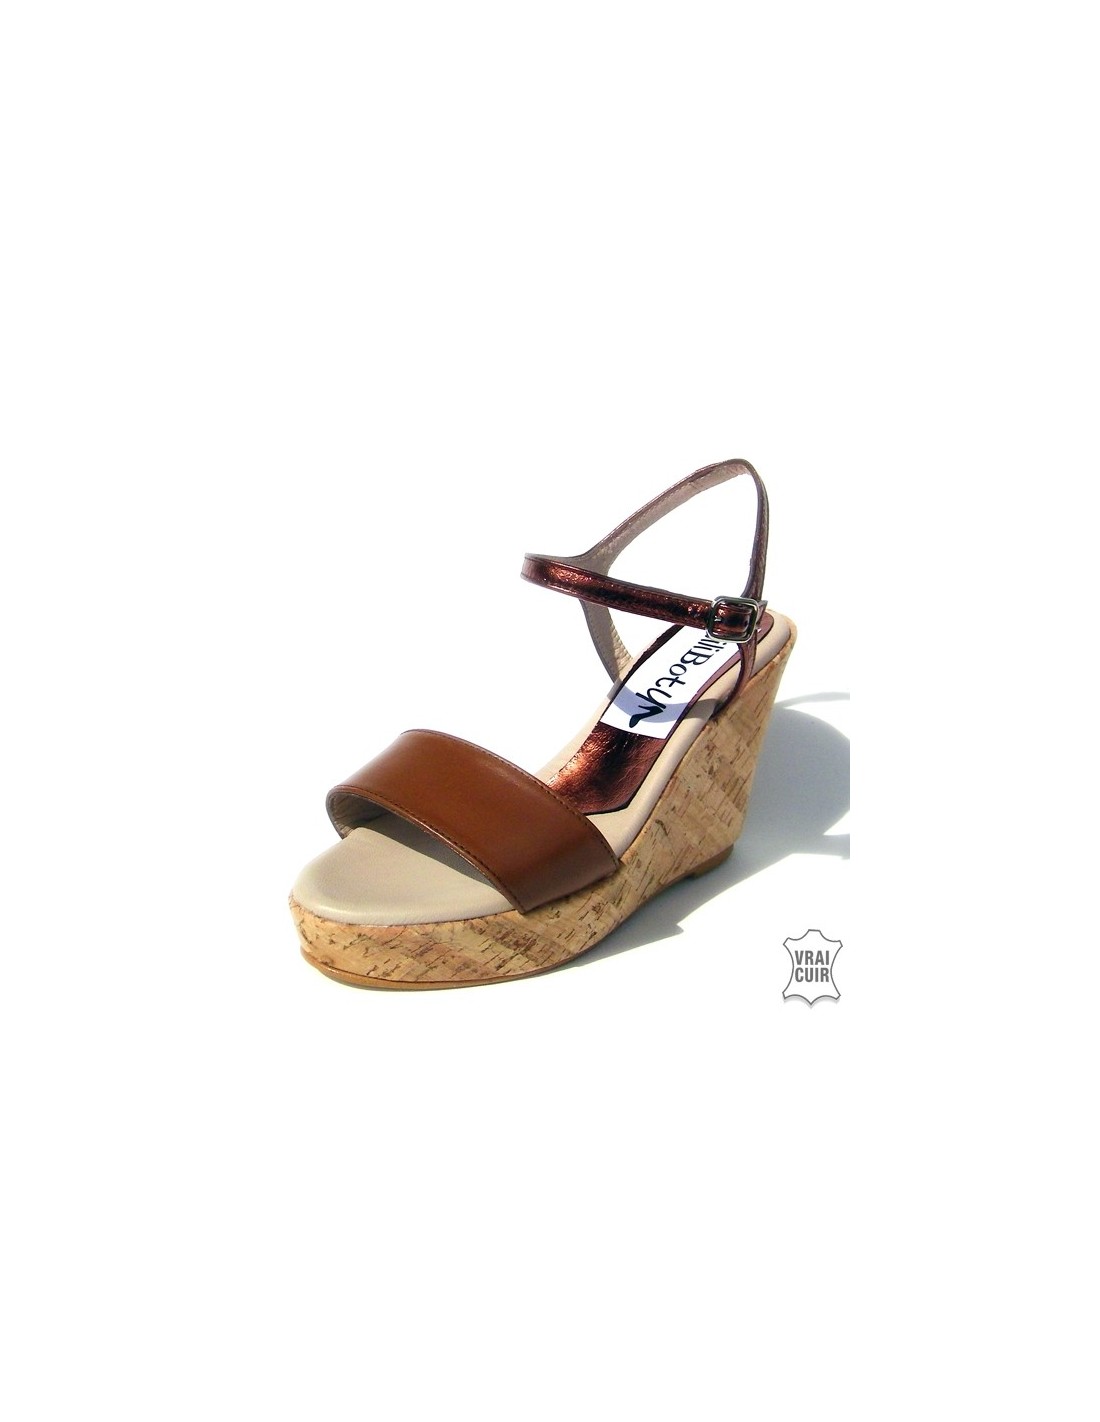 Sandalias piel marrón con tacones de cuña de pequeña para mujer